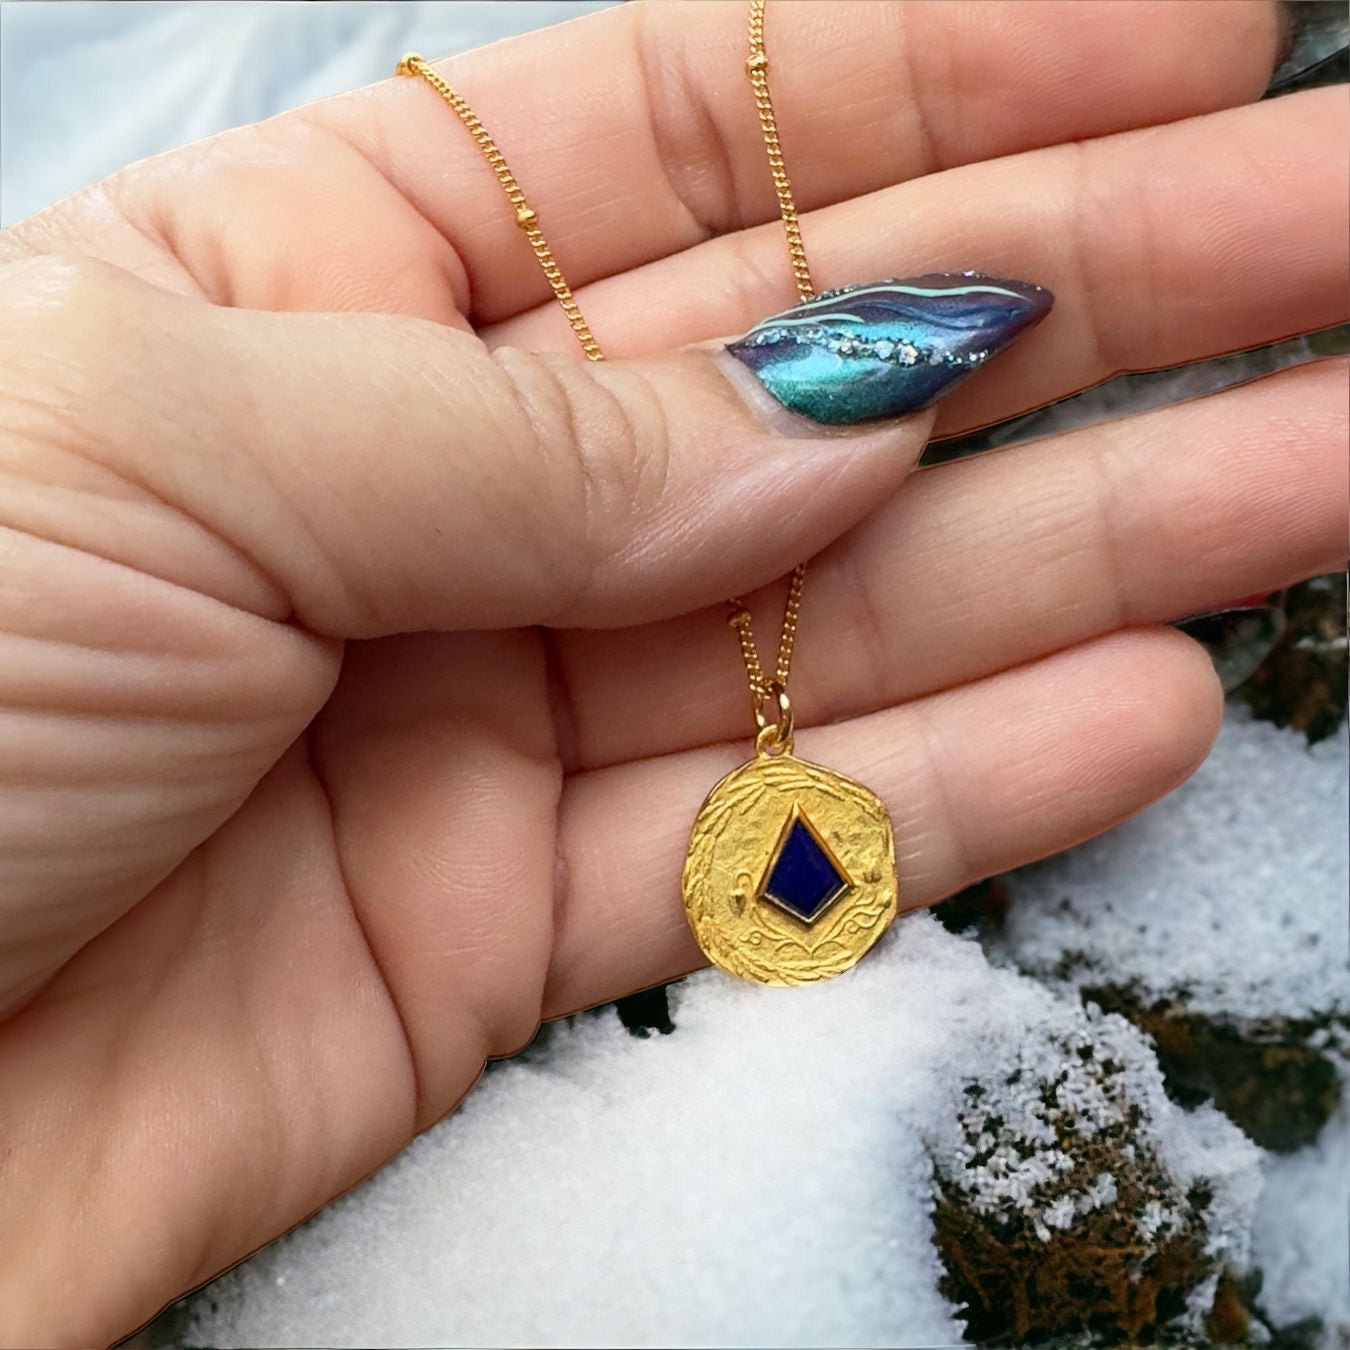 Lapis lazuli Amulet Pendant 
Necklace